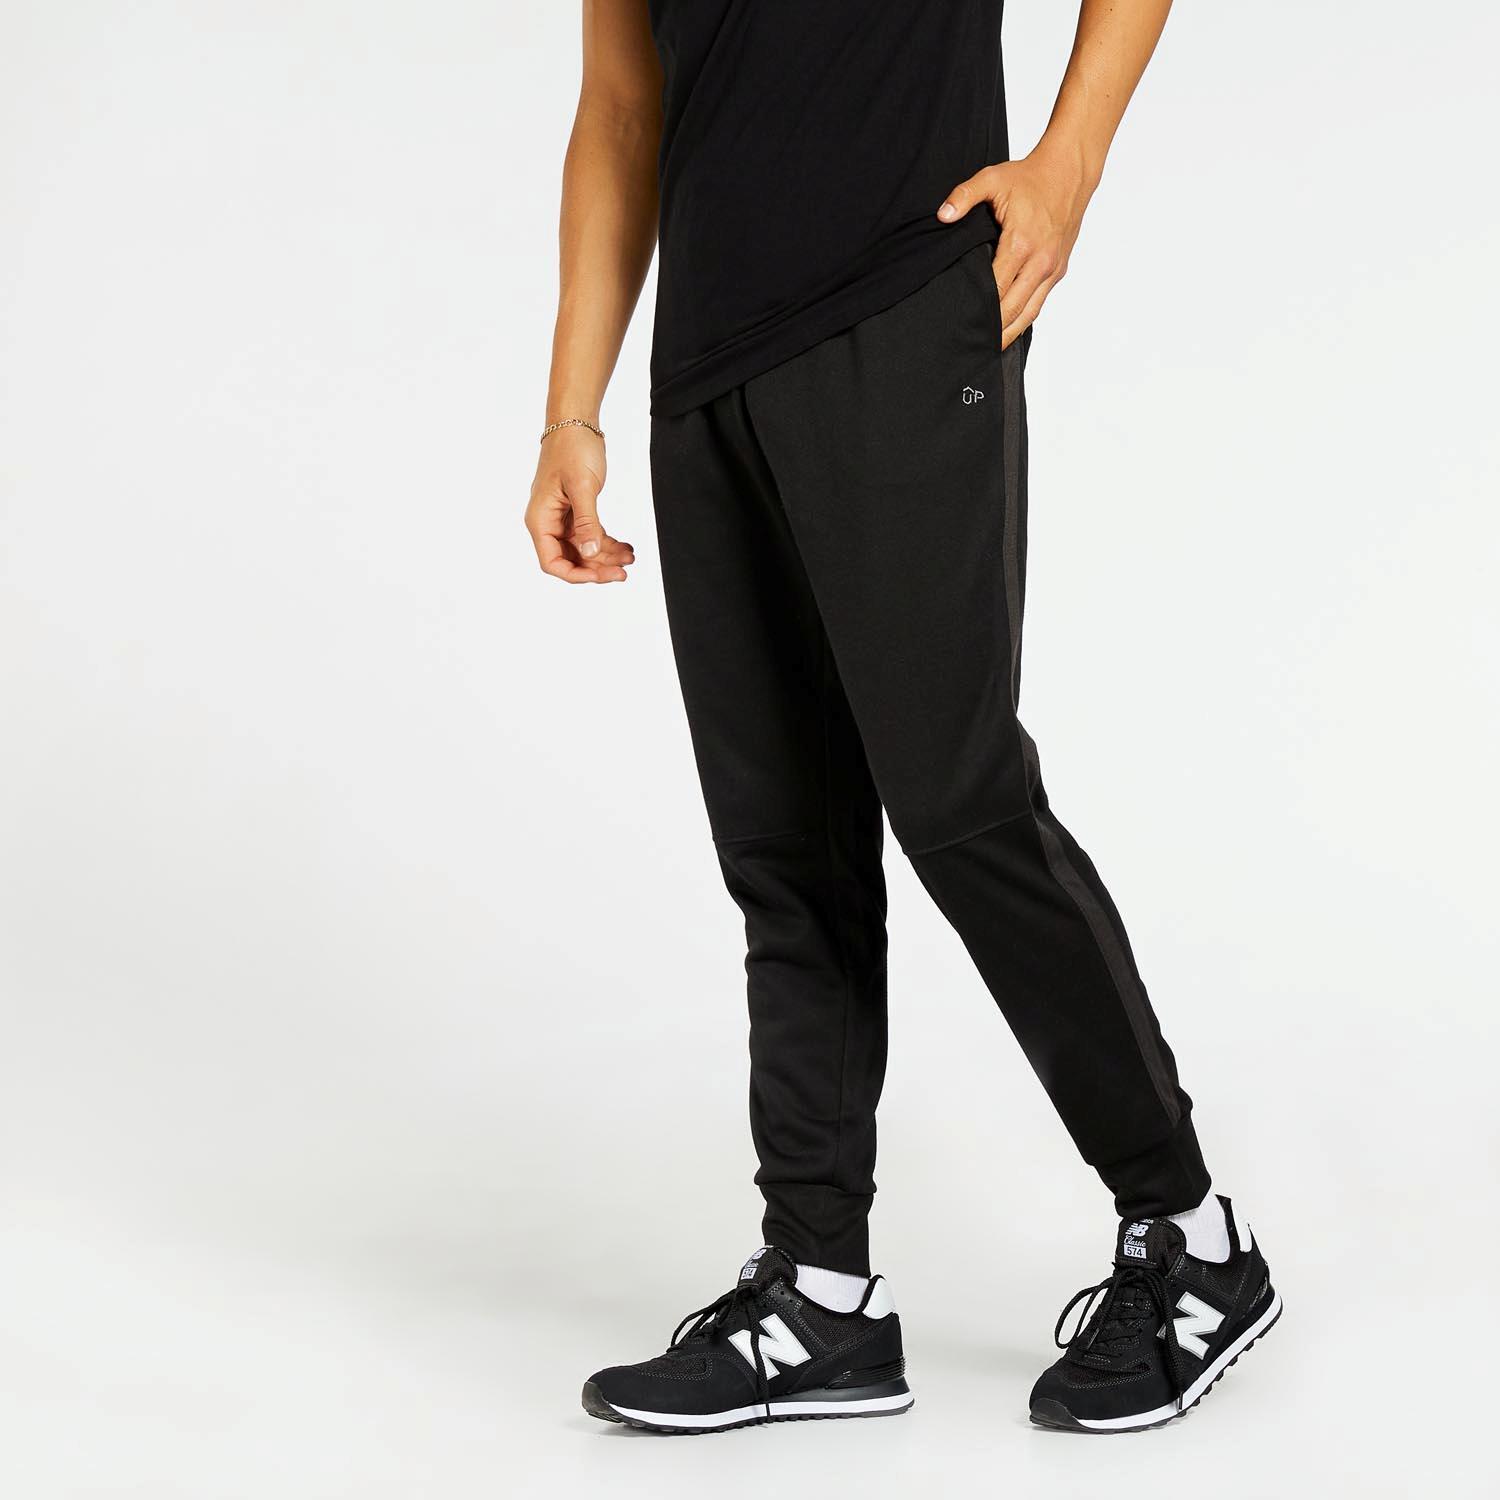 Up Basic - Noire - Pantalon de survêtement homme sports taille 2XL